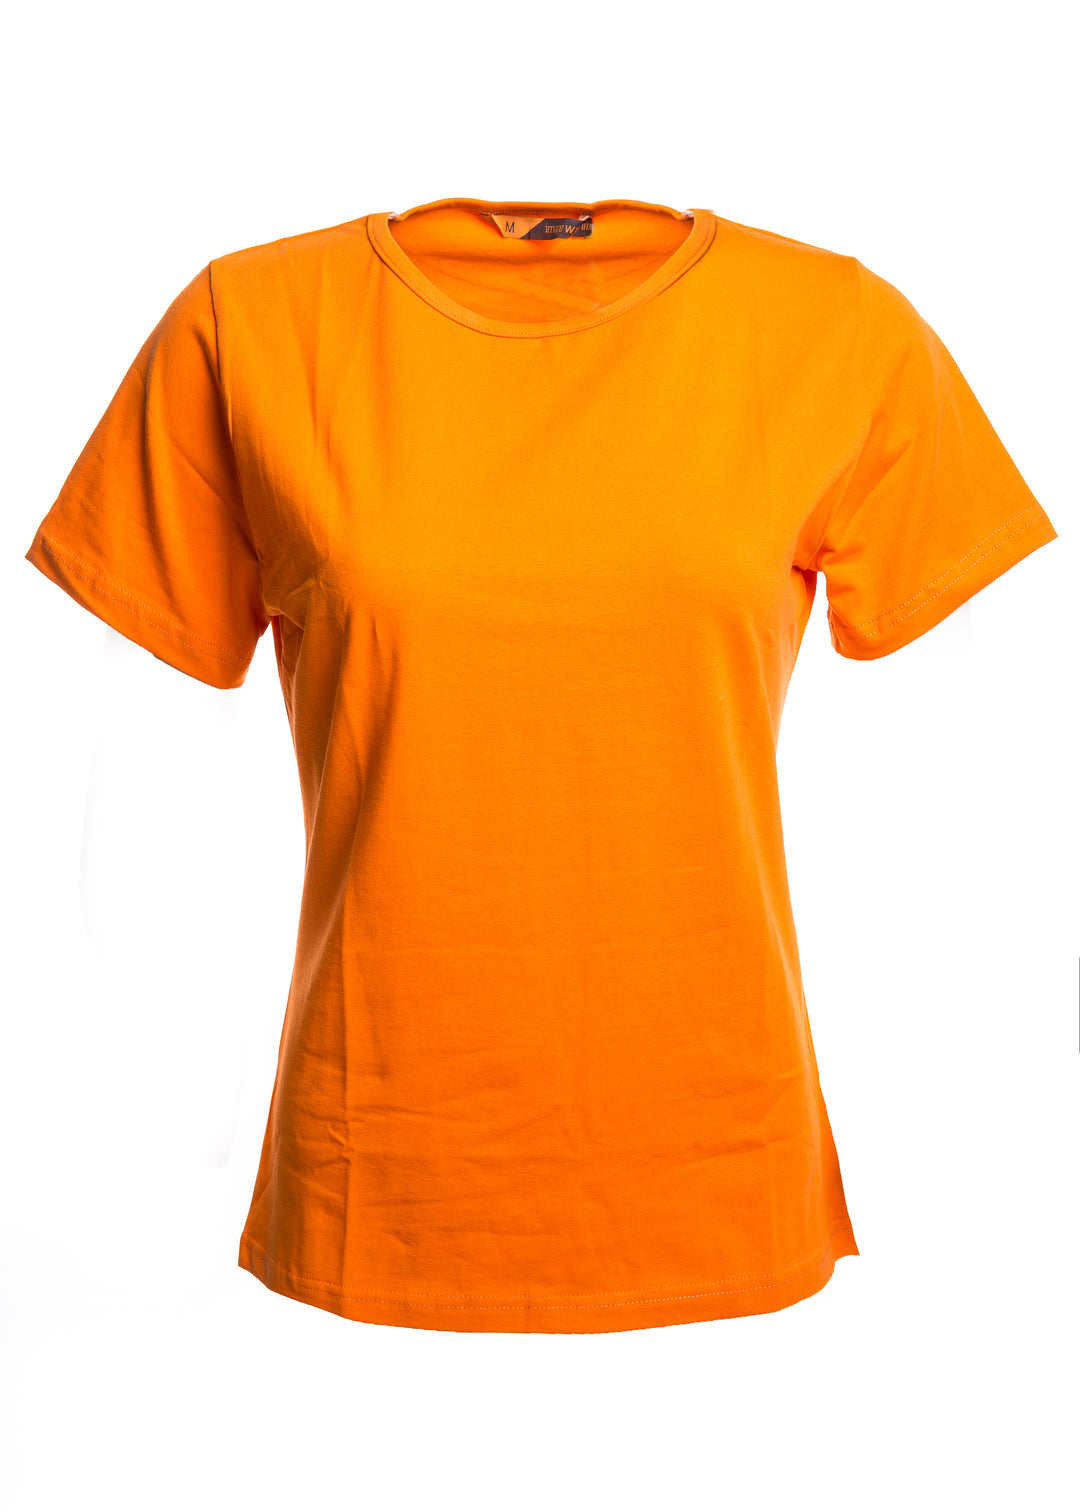 Naisten lyhythihainen oranssi T-paita o-pääntiellä. Malli on aavistuksen tyköistuva. 